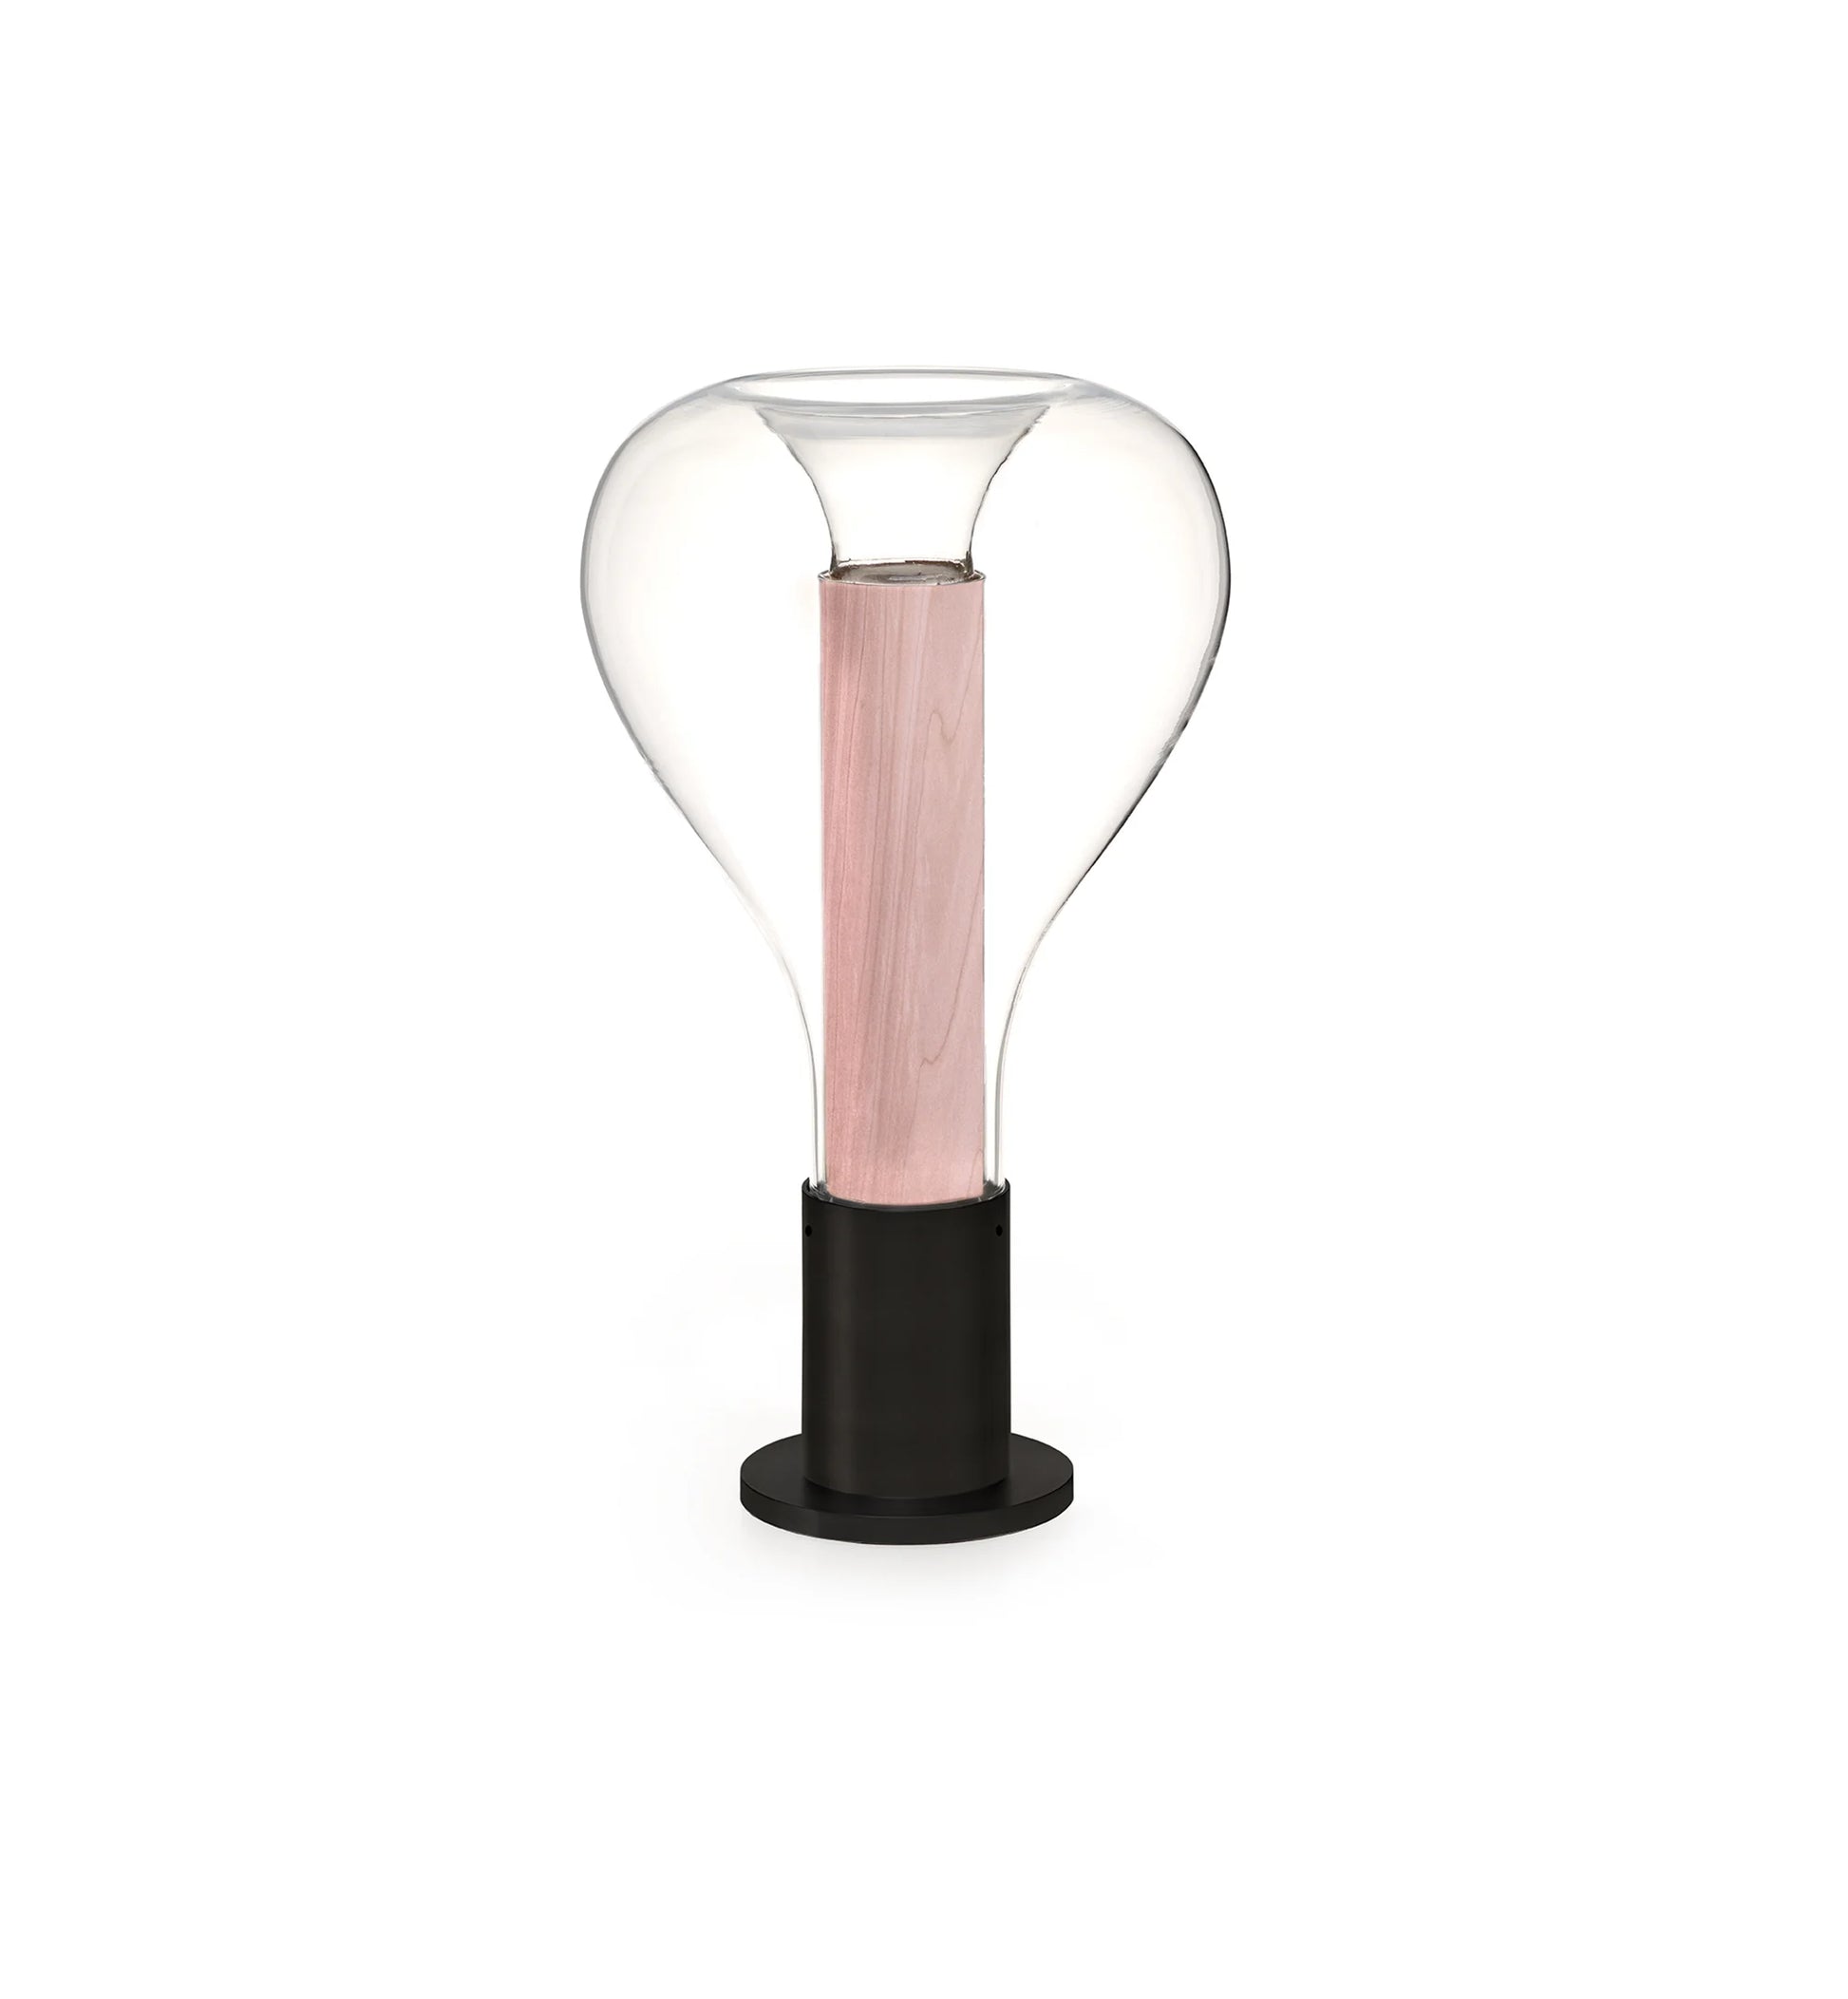 Best table lamp for office desk, luxury lighting, best table lamp in wood glass, table lamp design,